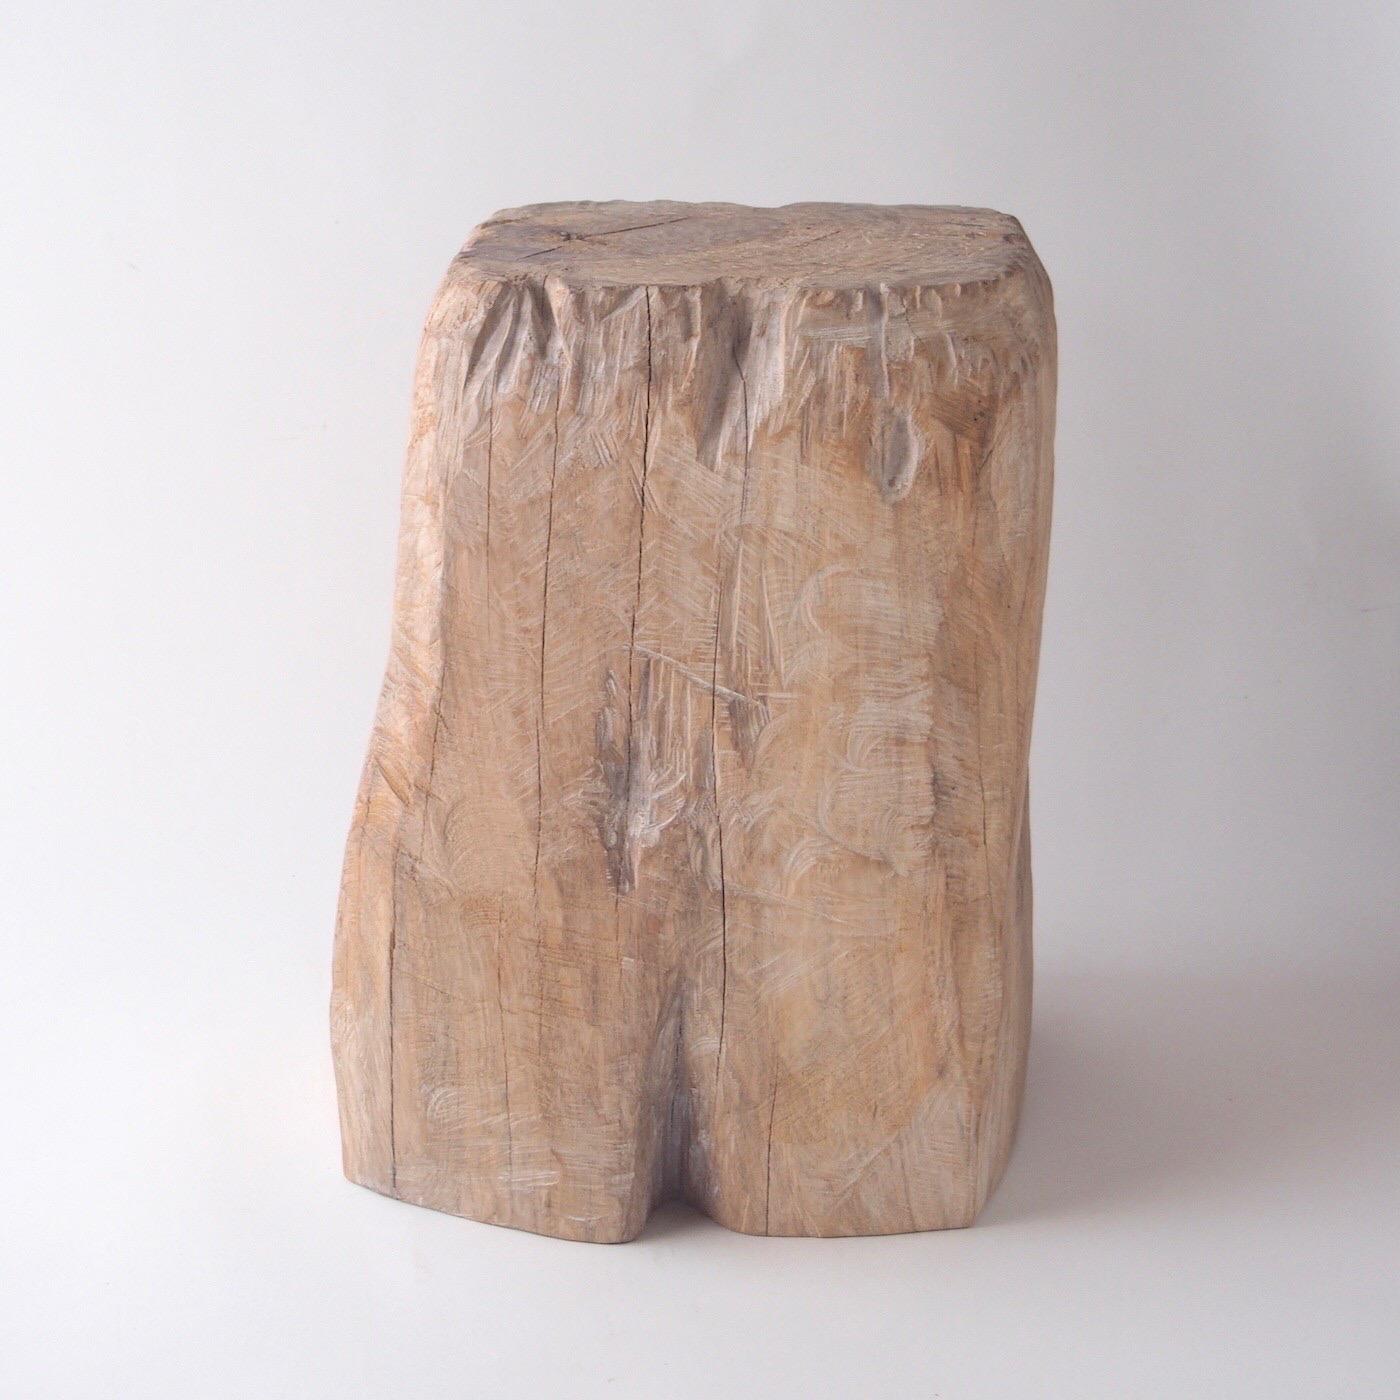 Name: Torso
Skulpturaler Hocker von Zogei geschnitzte Möbel
MATERIAL: Zelkova
Dieses Werk wird mit einigen Arten von Kettensägen aus Holz geschnitzt.
Das meiste Holz, das für Nishimuras Werke verwendet wird, ist nicht zu gebrauchen, diese Hölzer